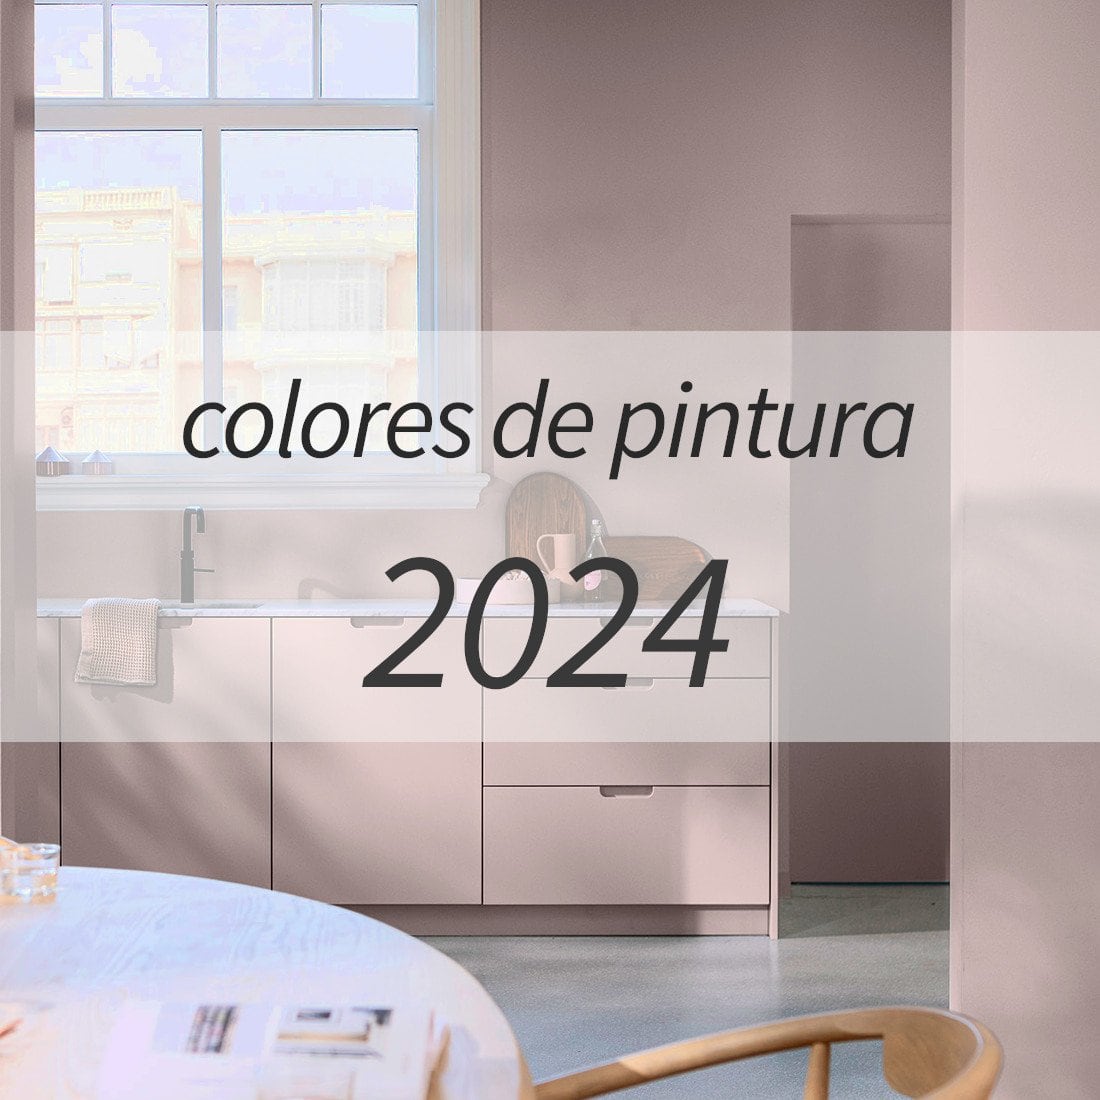 Colores de pintura 2024